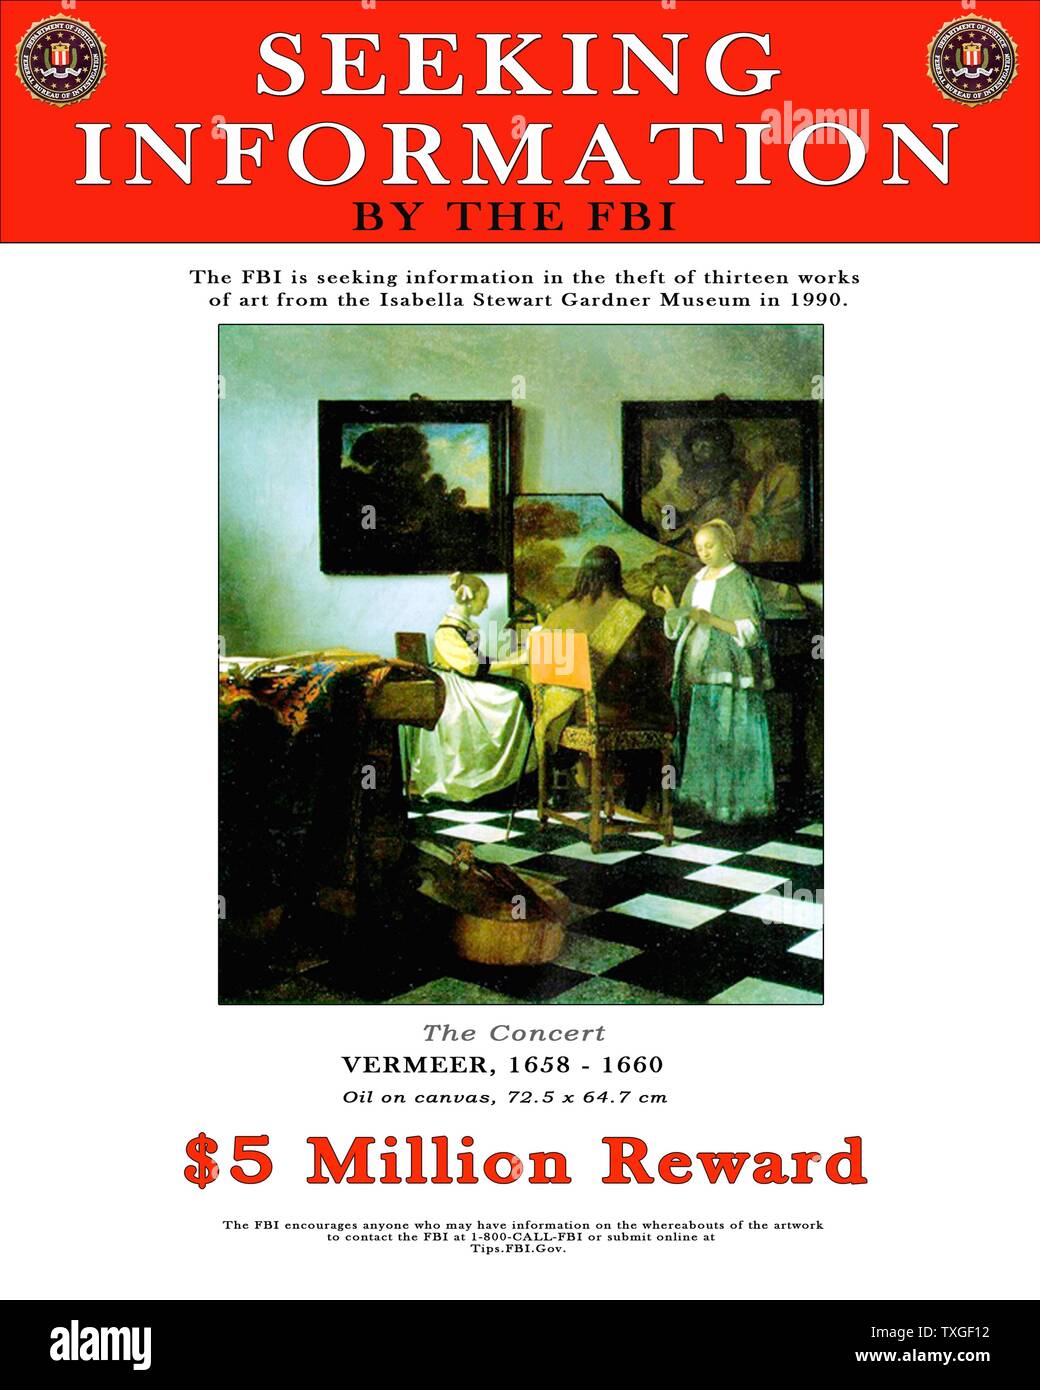 Póster del FBI ofreciendo una recompensa por información sobre el robo de arte de pinturas de Vermeer (incluido el trabajo), desde la Isabel Gardiner Art Museum en 1990. Foto de stock